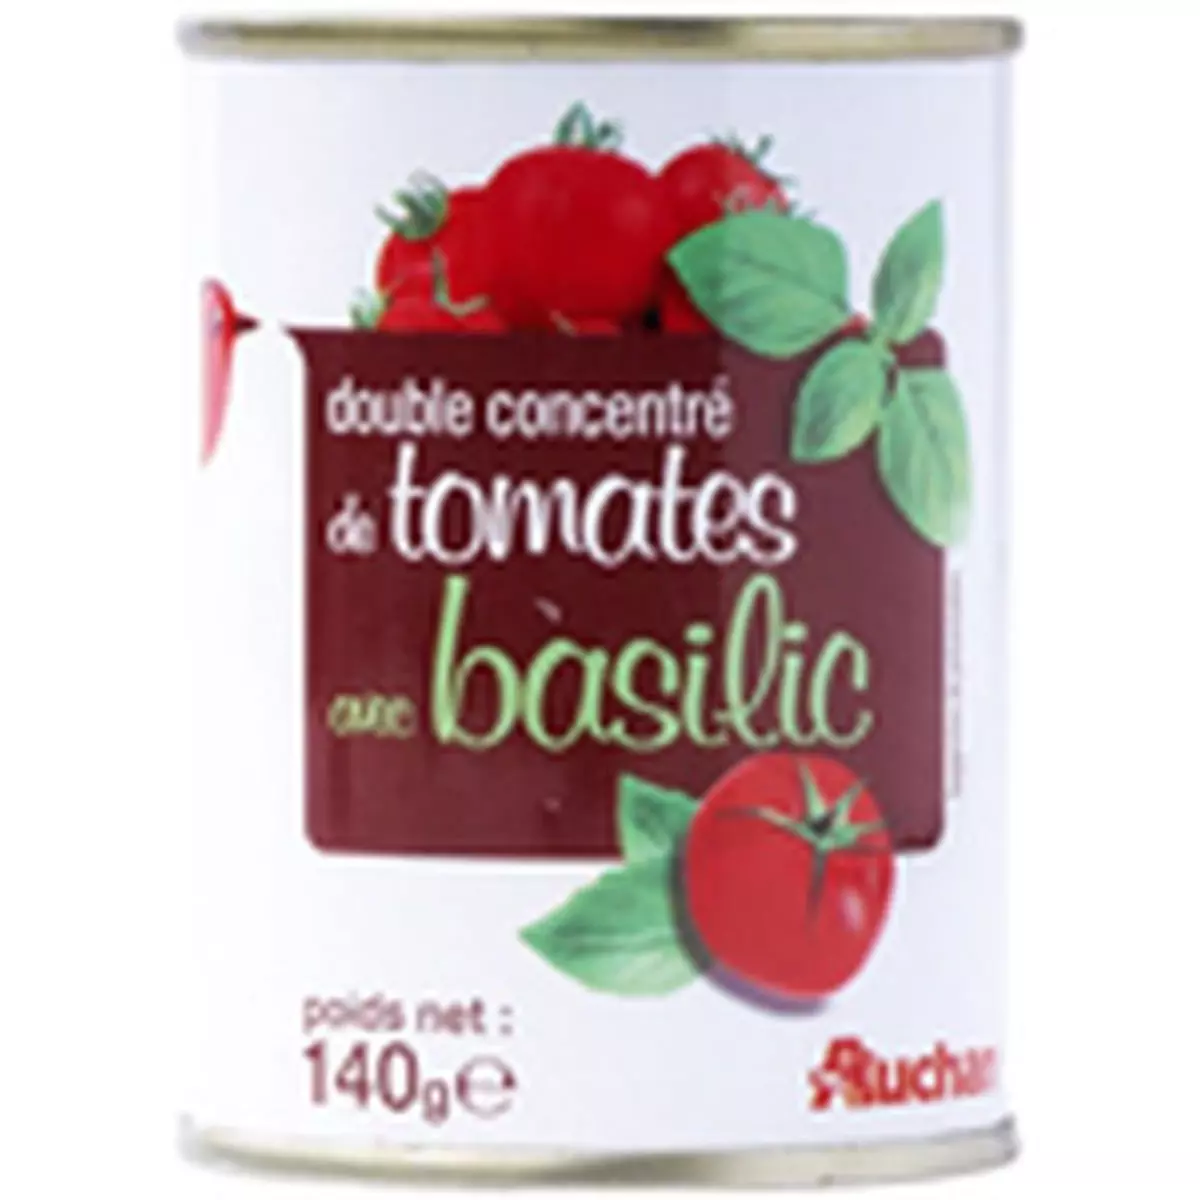 AUCHAN Auchan double concentré tomate/basilic 140g